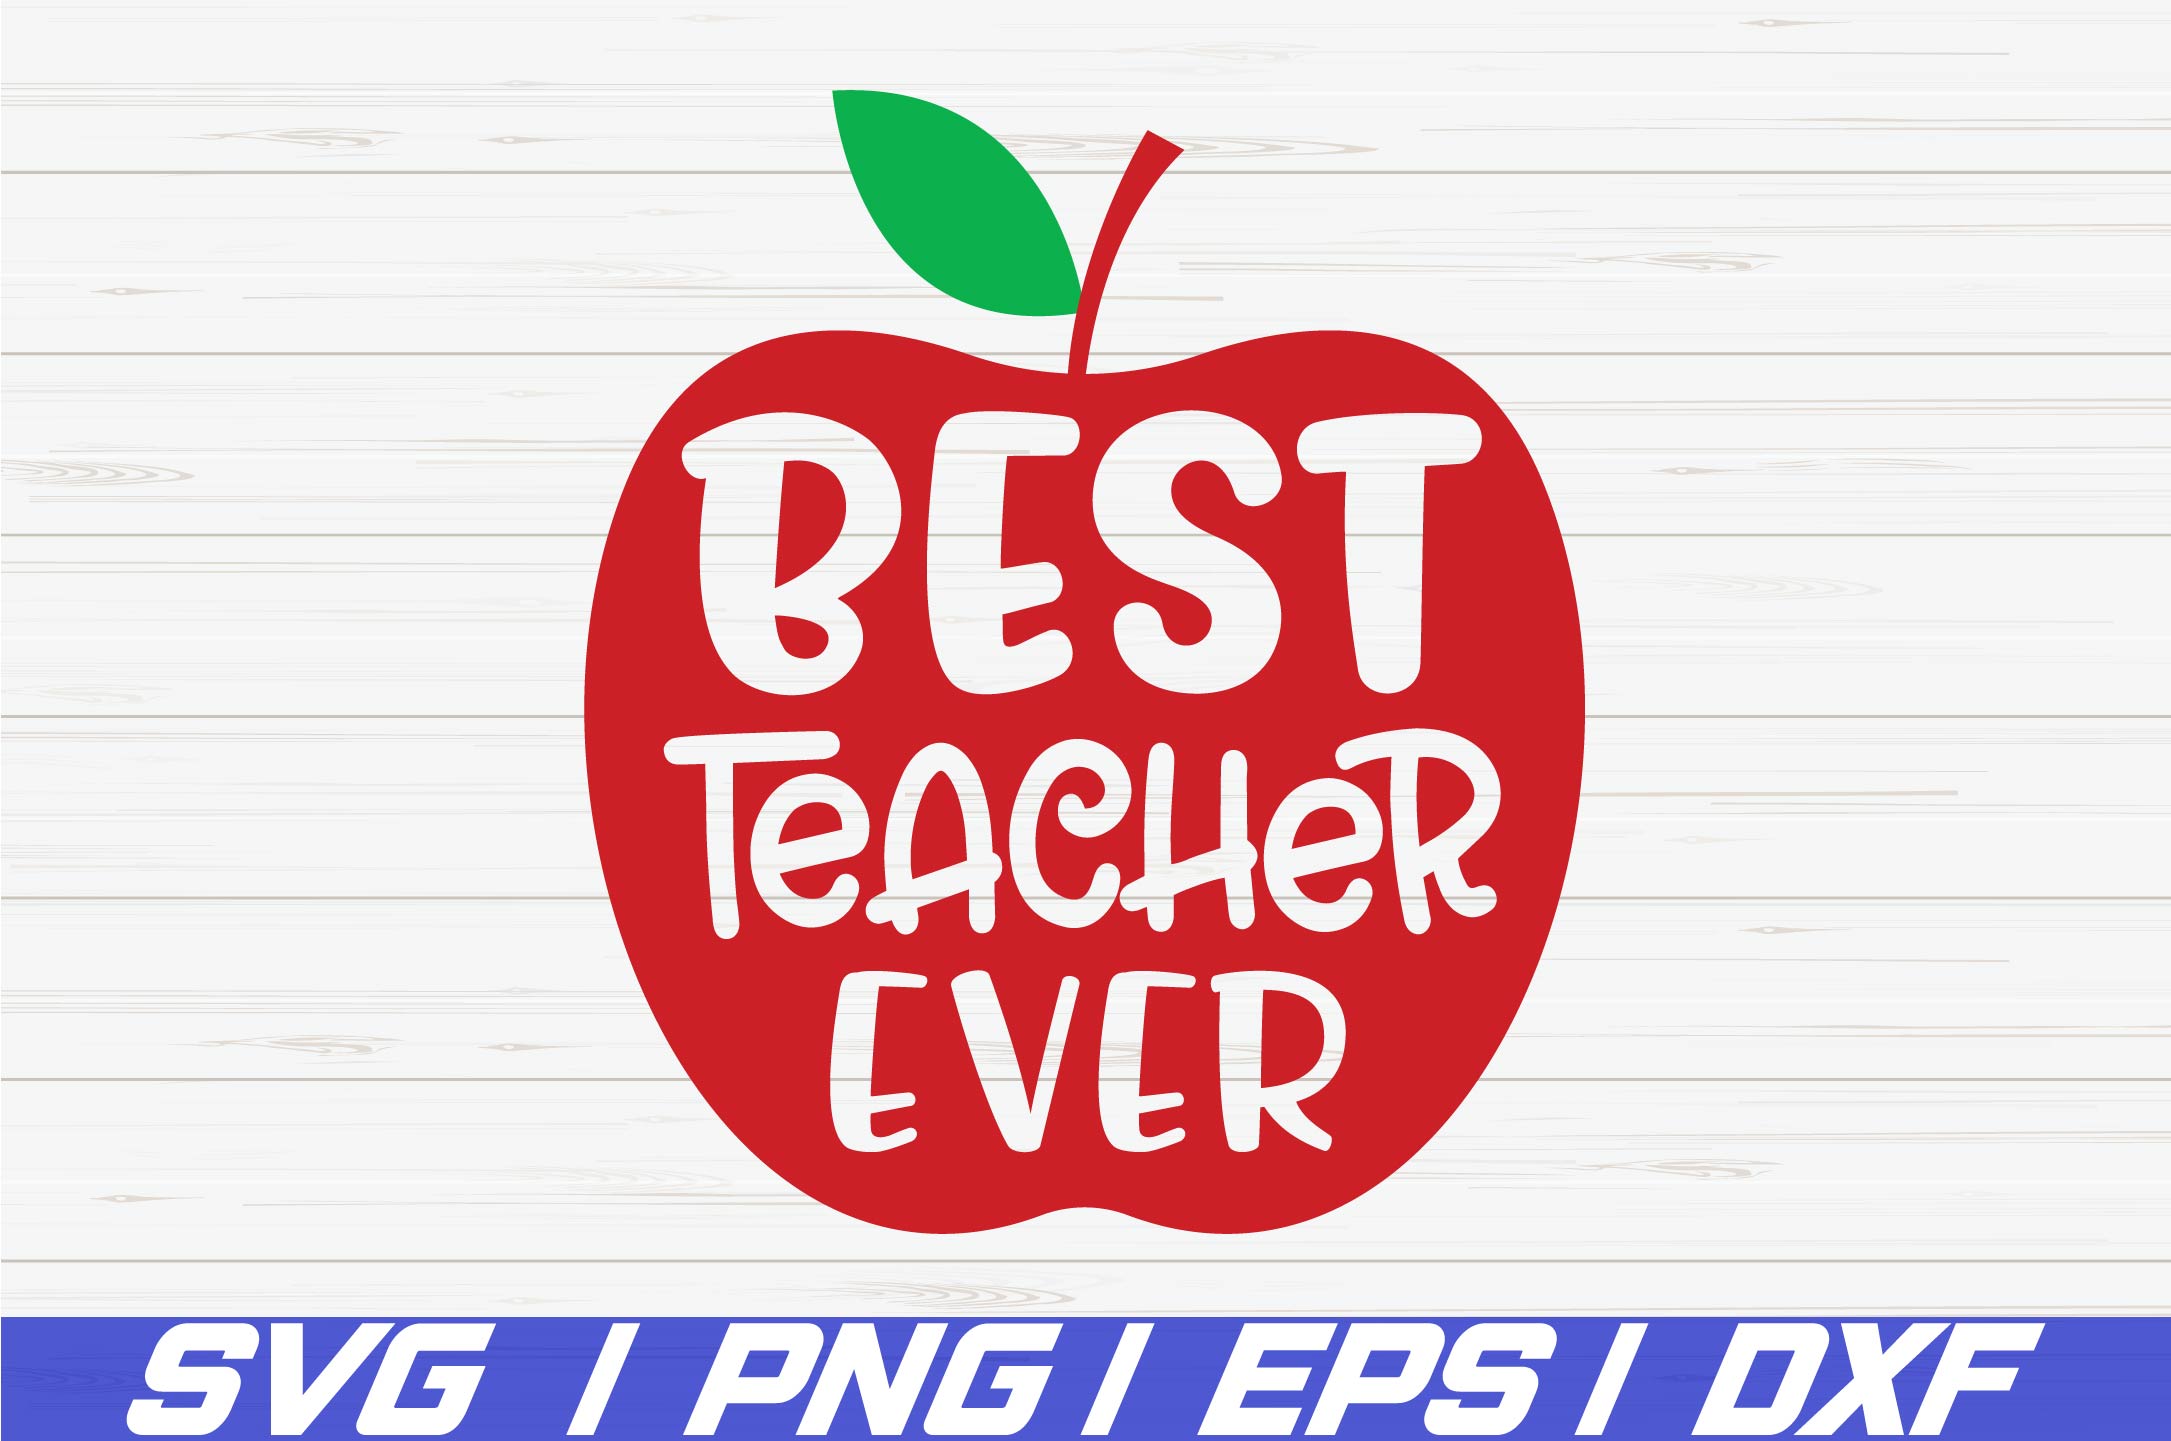 Download Best Teacher Ever SVG / Cut File / Commercial use / Cricut